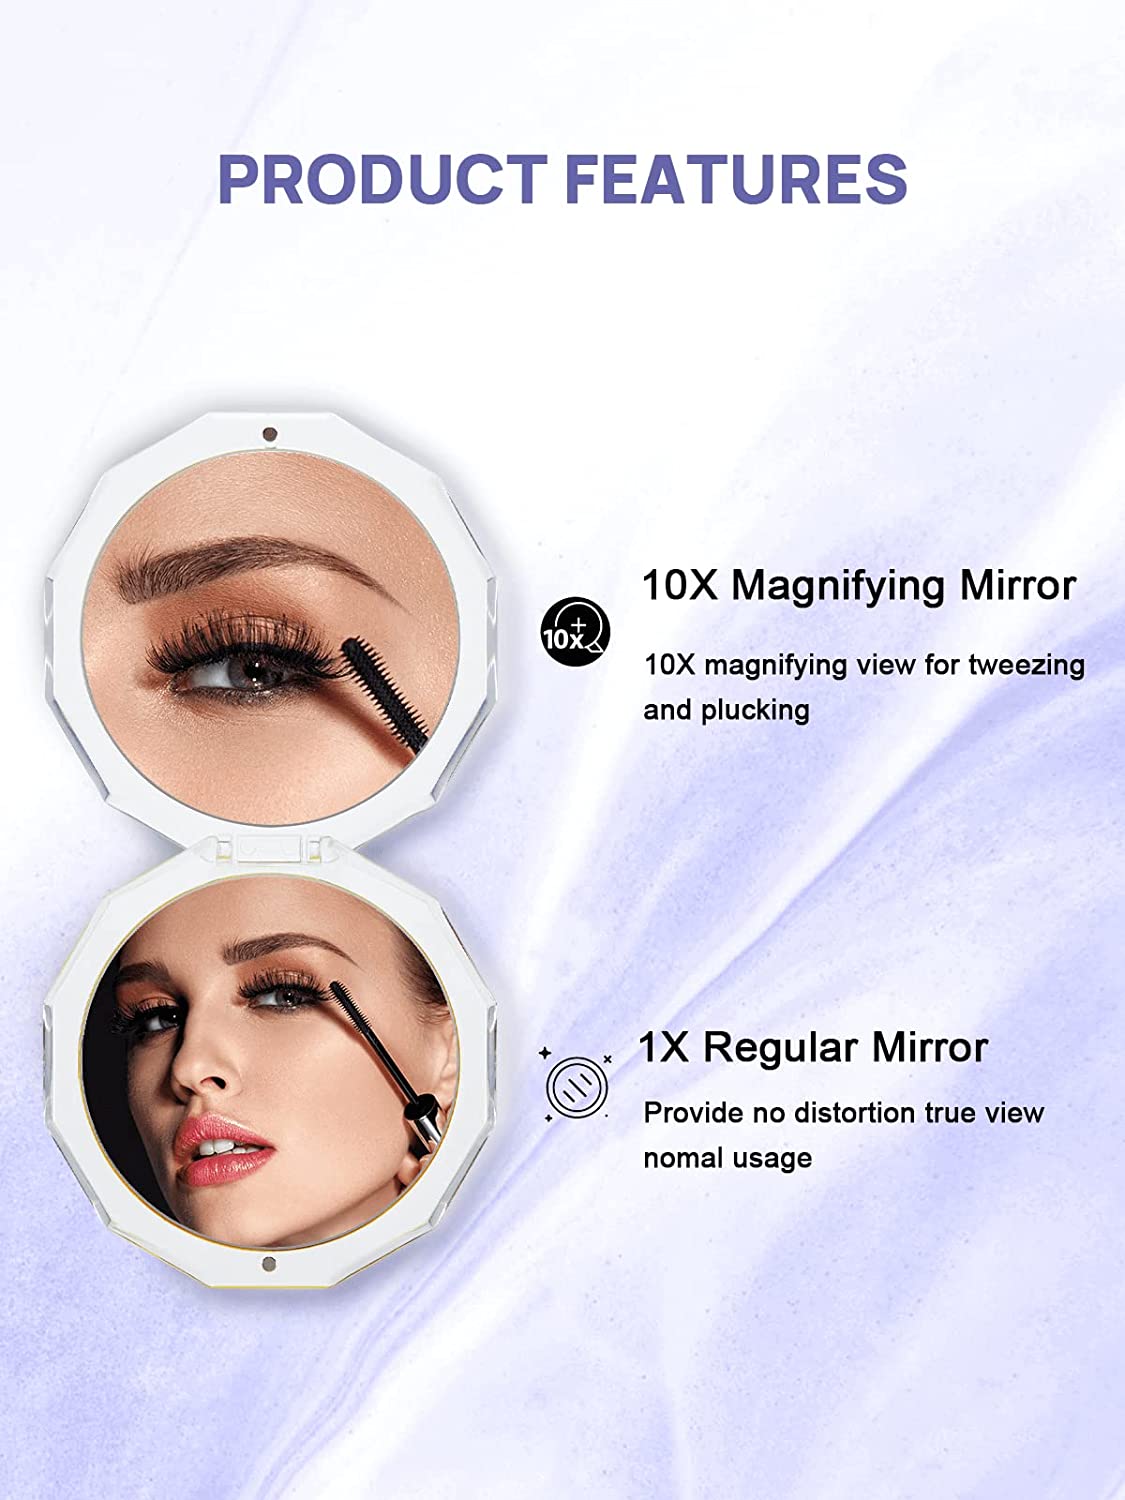 OMIRO Kompakt Spejl, 3½" 1X/10X Forstørrelse Mini Sammenfoldelig Makeup Spejl til Punge (Årets Farve 2022 - Very Peri)